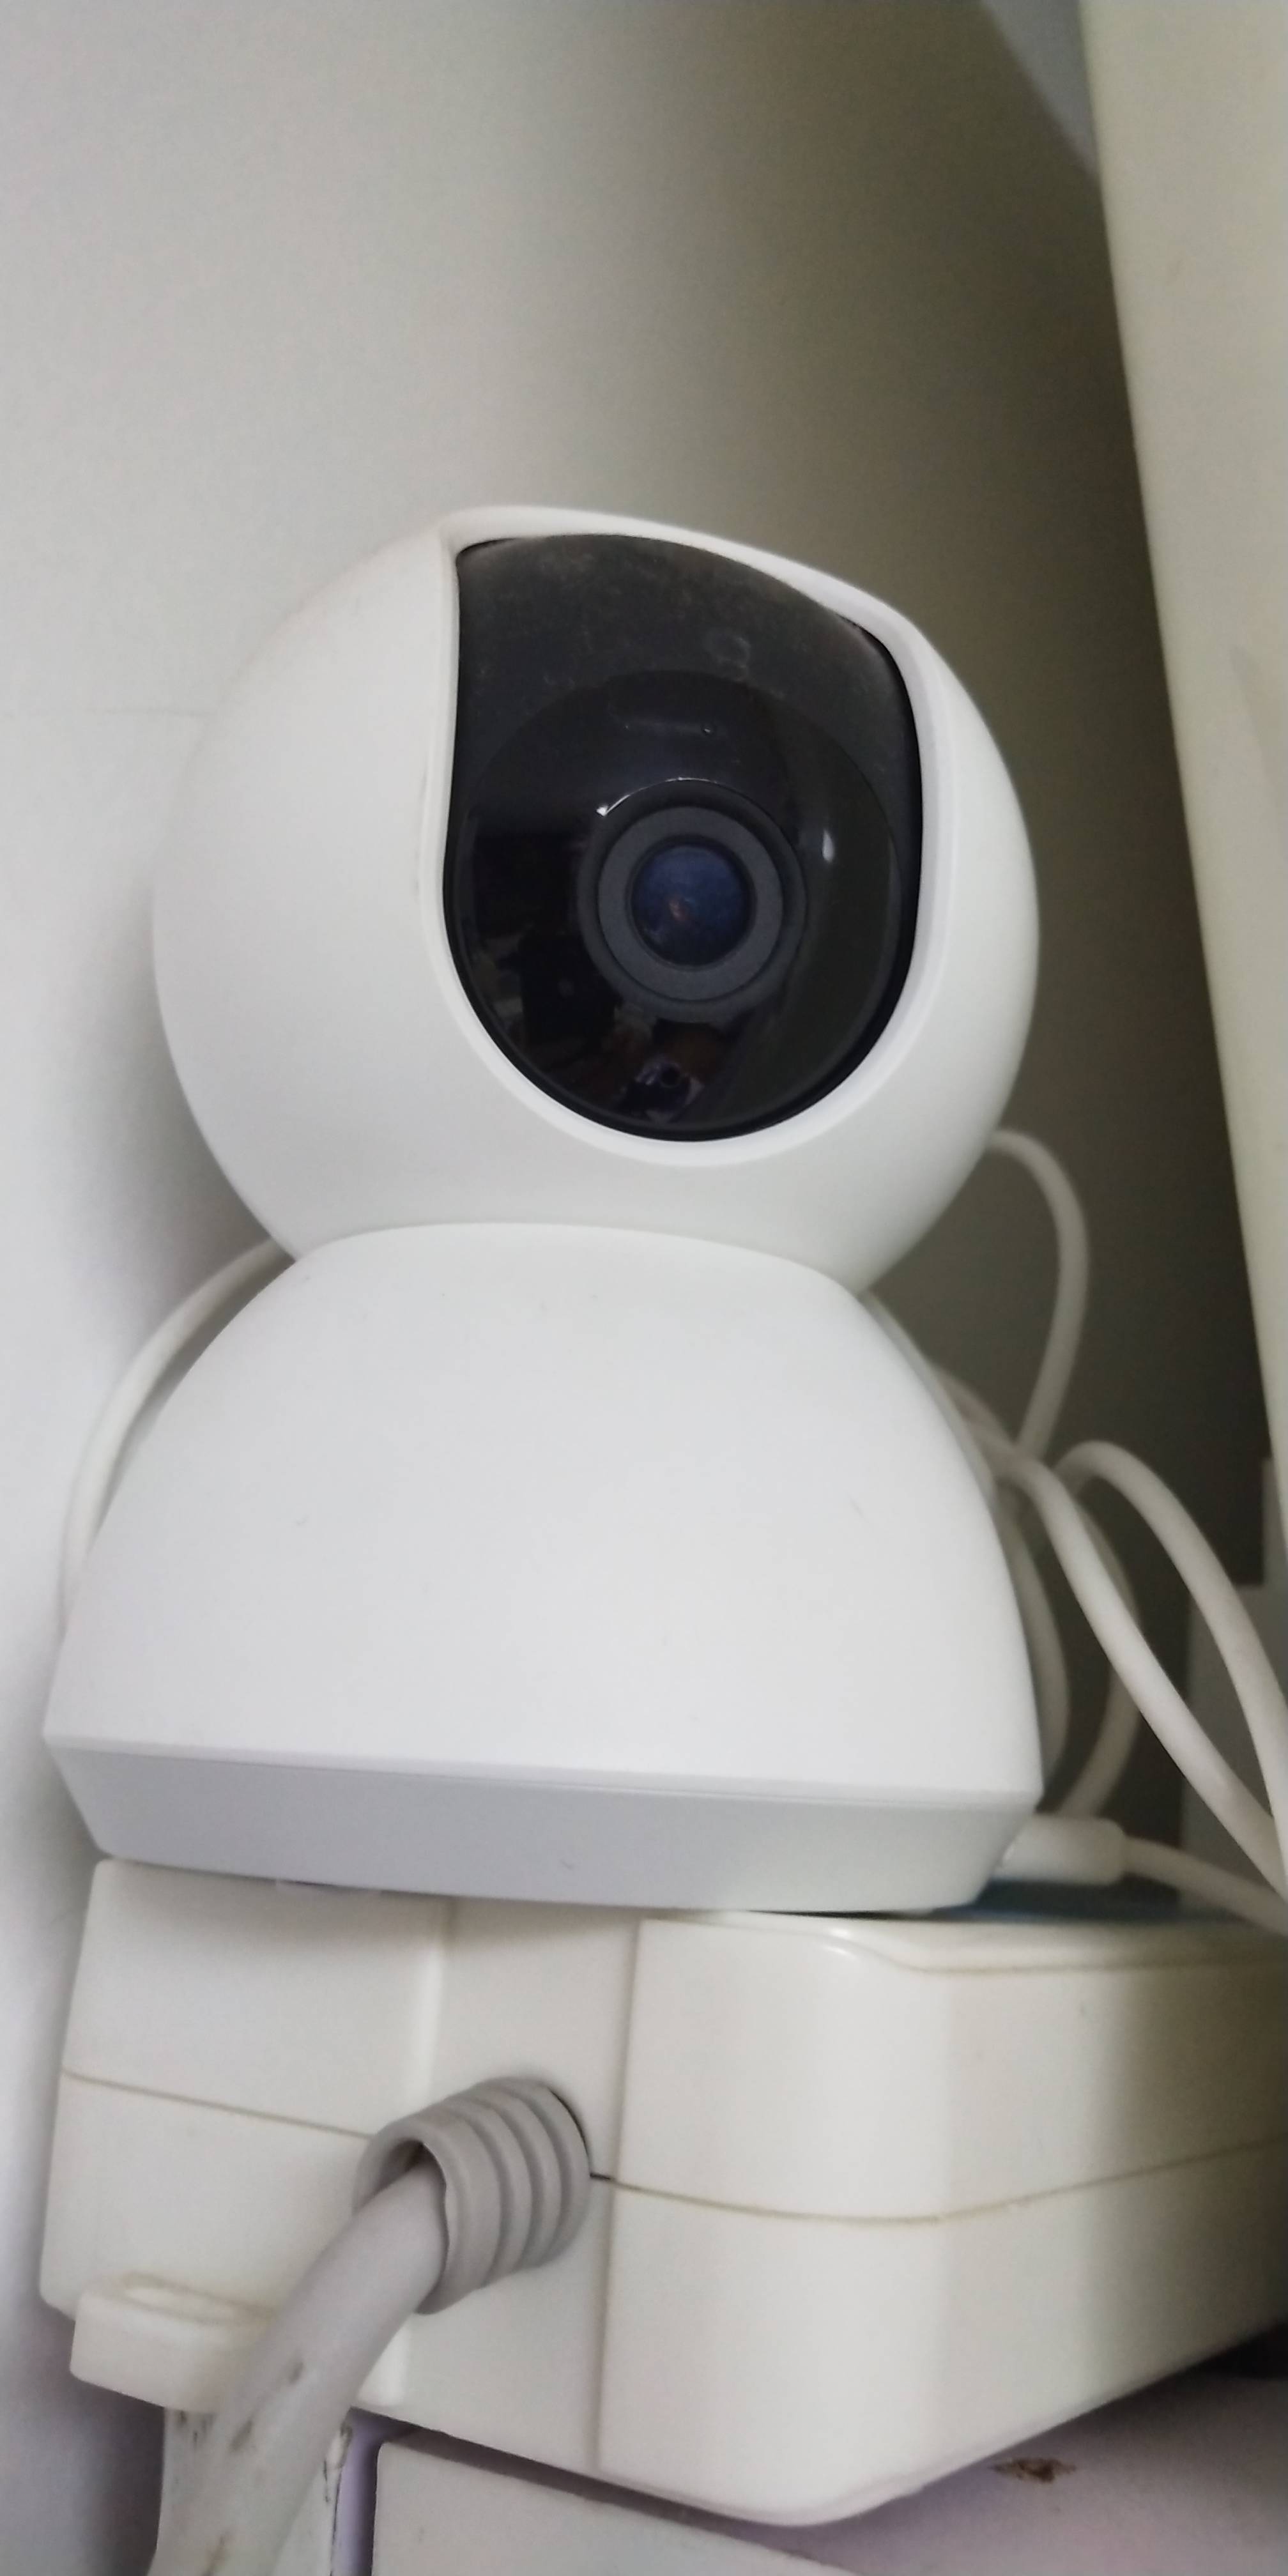 家用监控高清360度红外夜视移动监测全景网络摄像头无线远程手机遥控